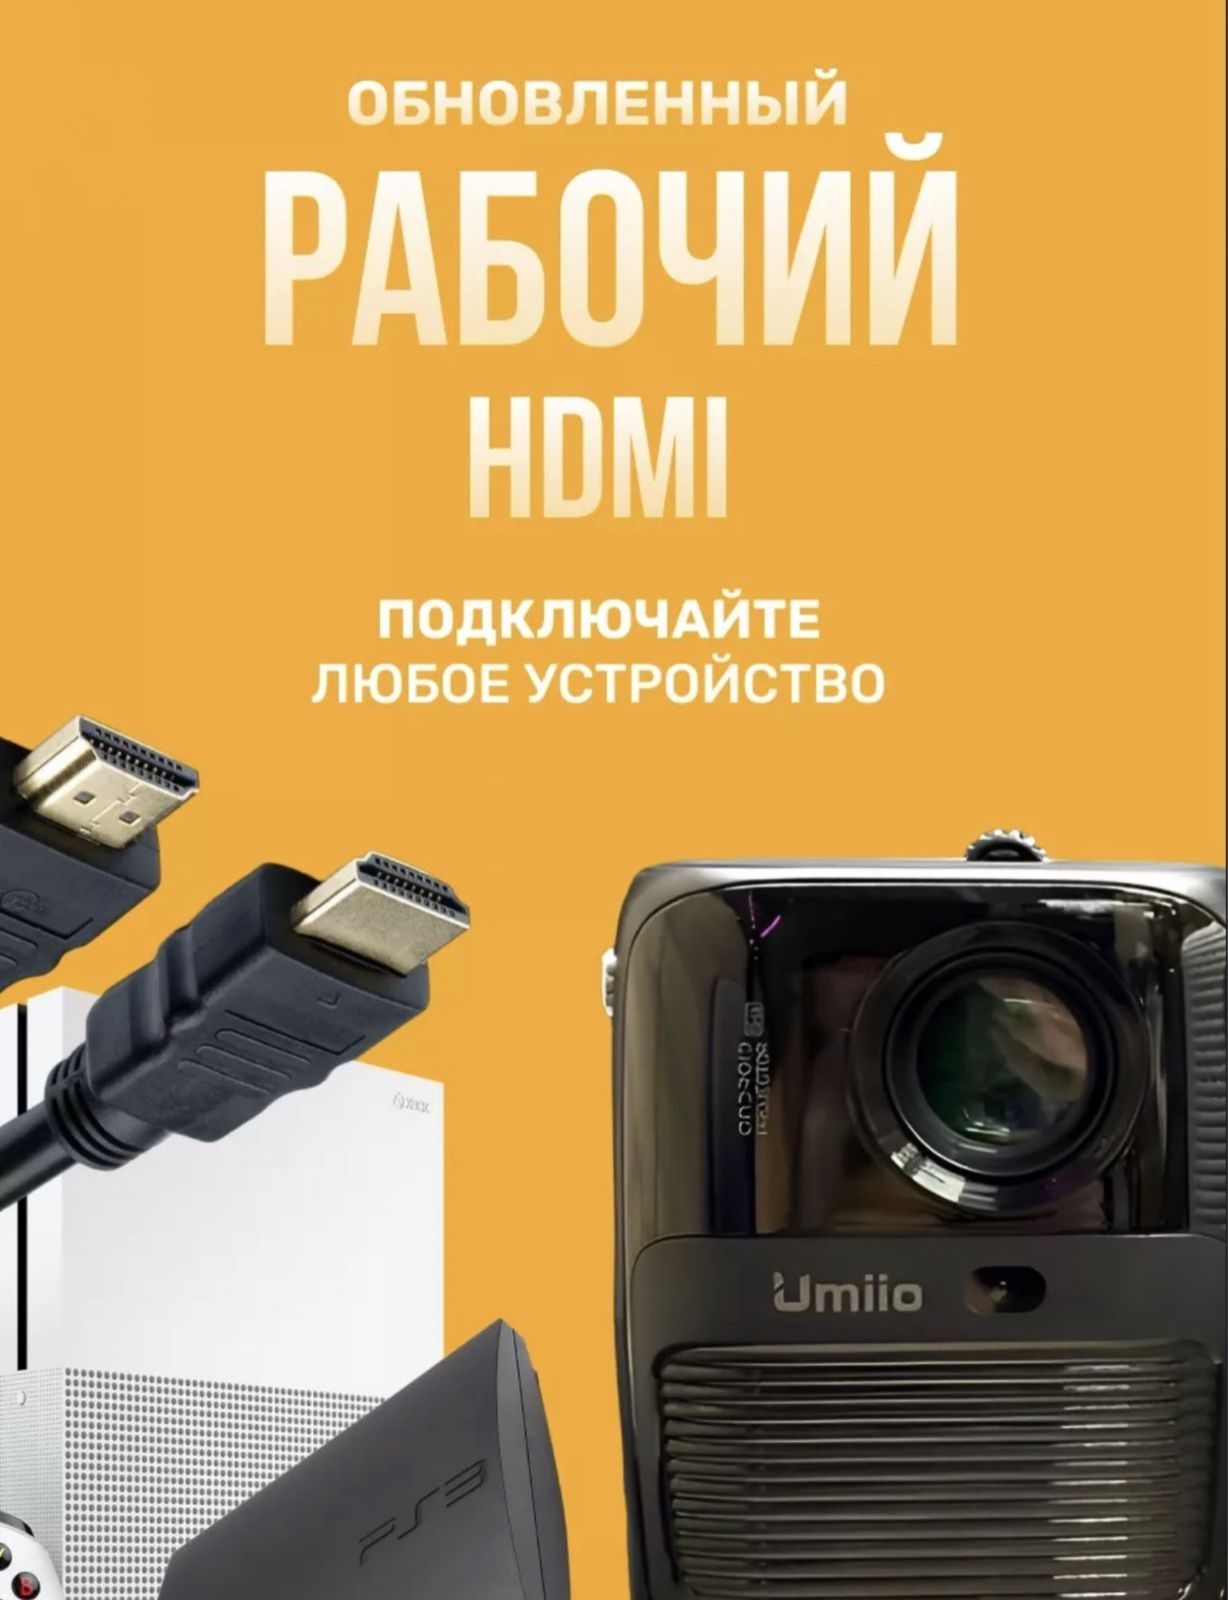 Проектор Umiio со штативом и с HDMI белый и черный 65990 тенге